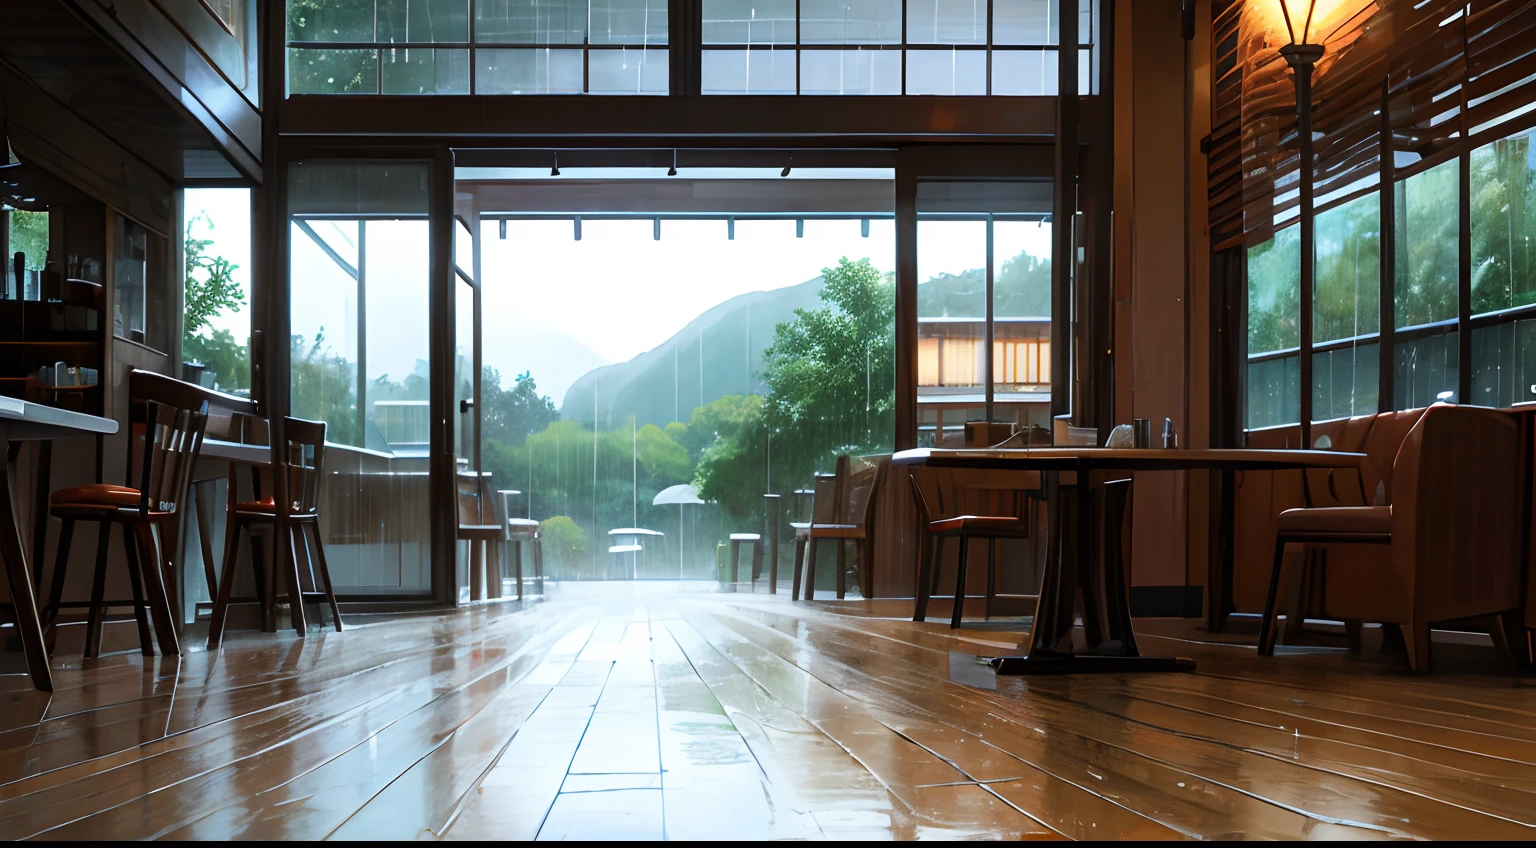 regentag café landschaft regnet regnerischen tag warmes licht